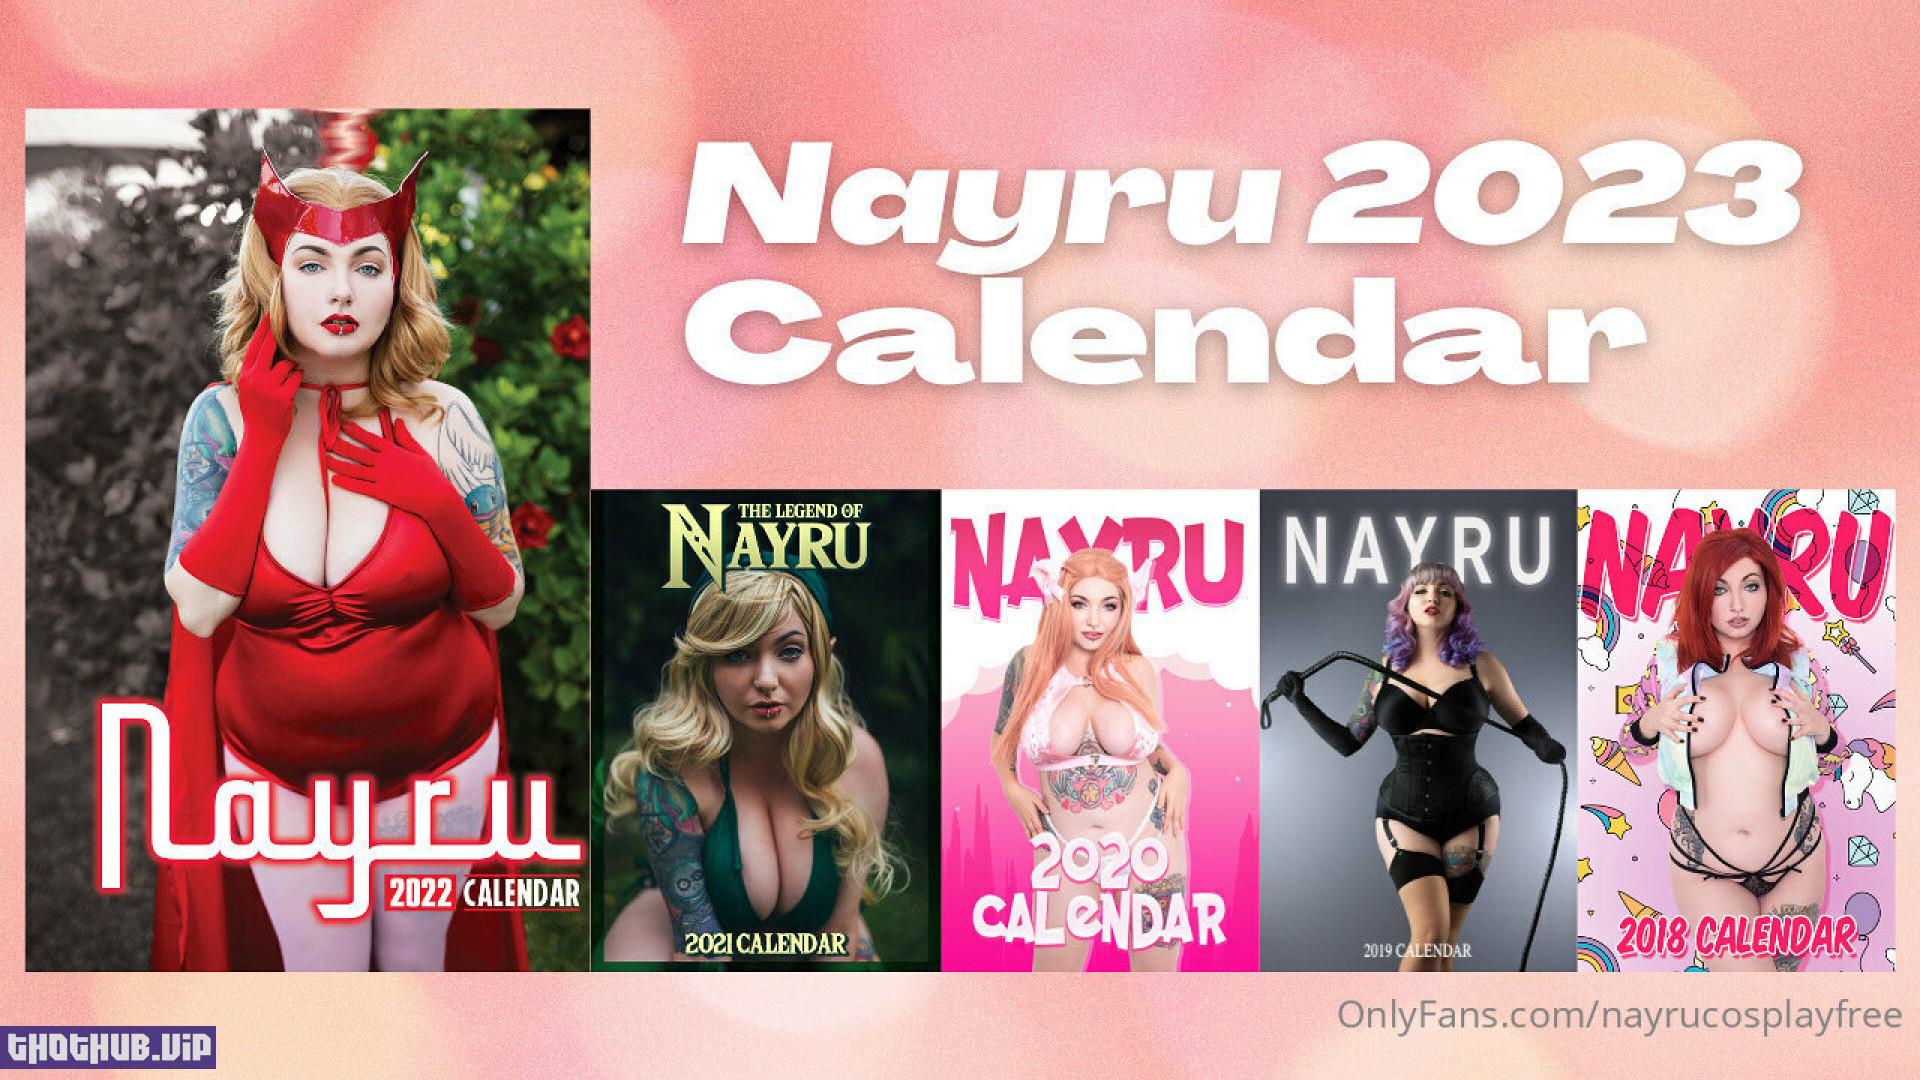 Nayru ~ Nude Cosplayer FREE (nayrucosplayfree) Onlyfans Leaks (144 images)